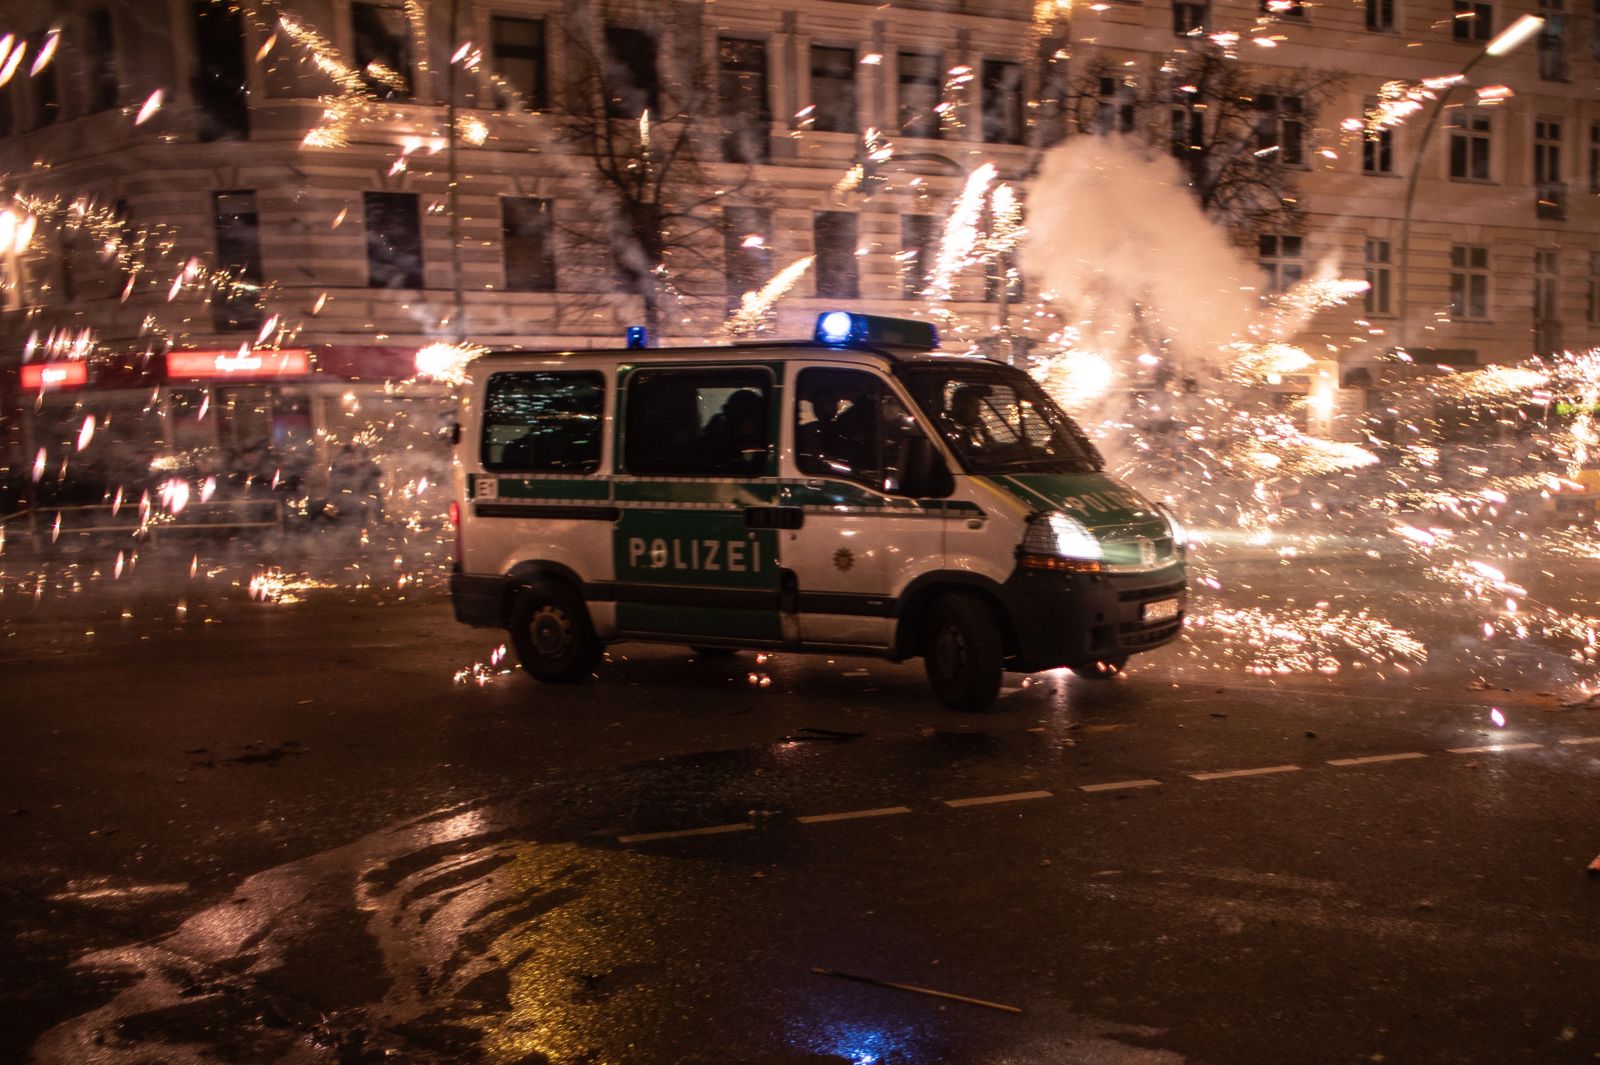 W Berlinie rzucano petardami prosto w samochody i budynki